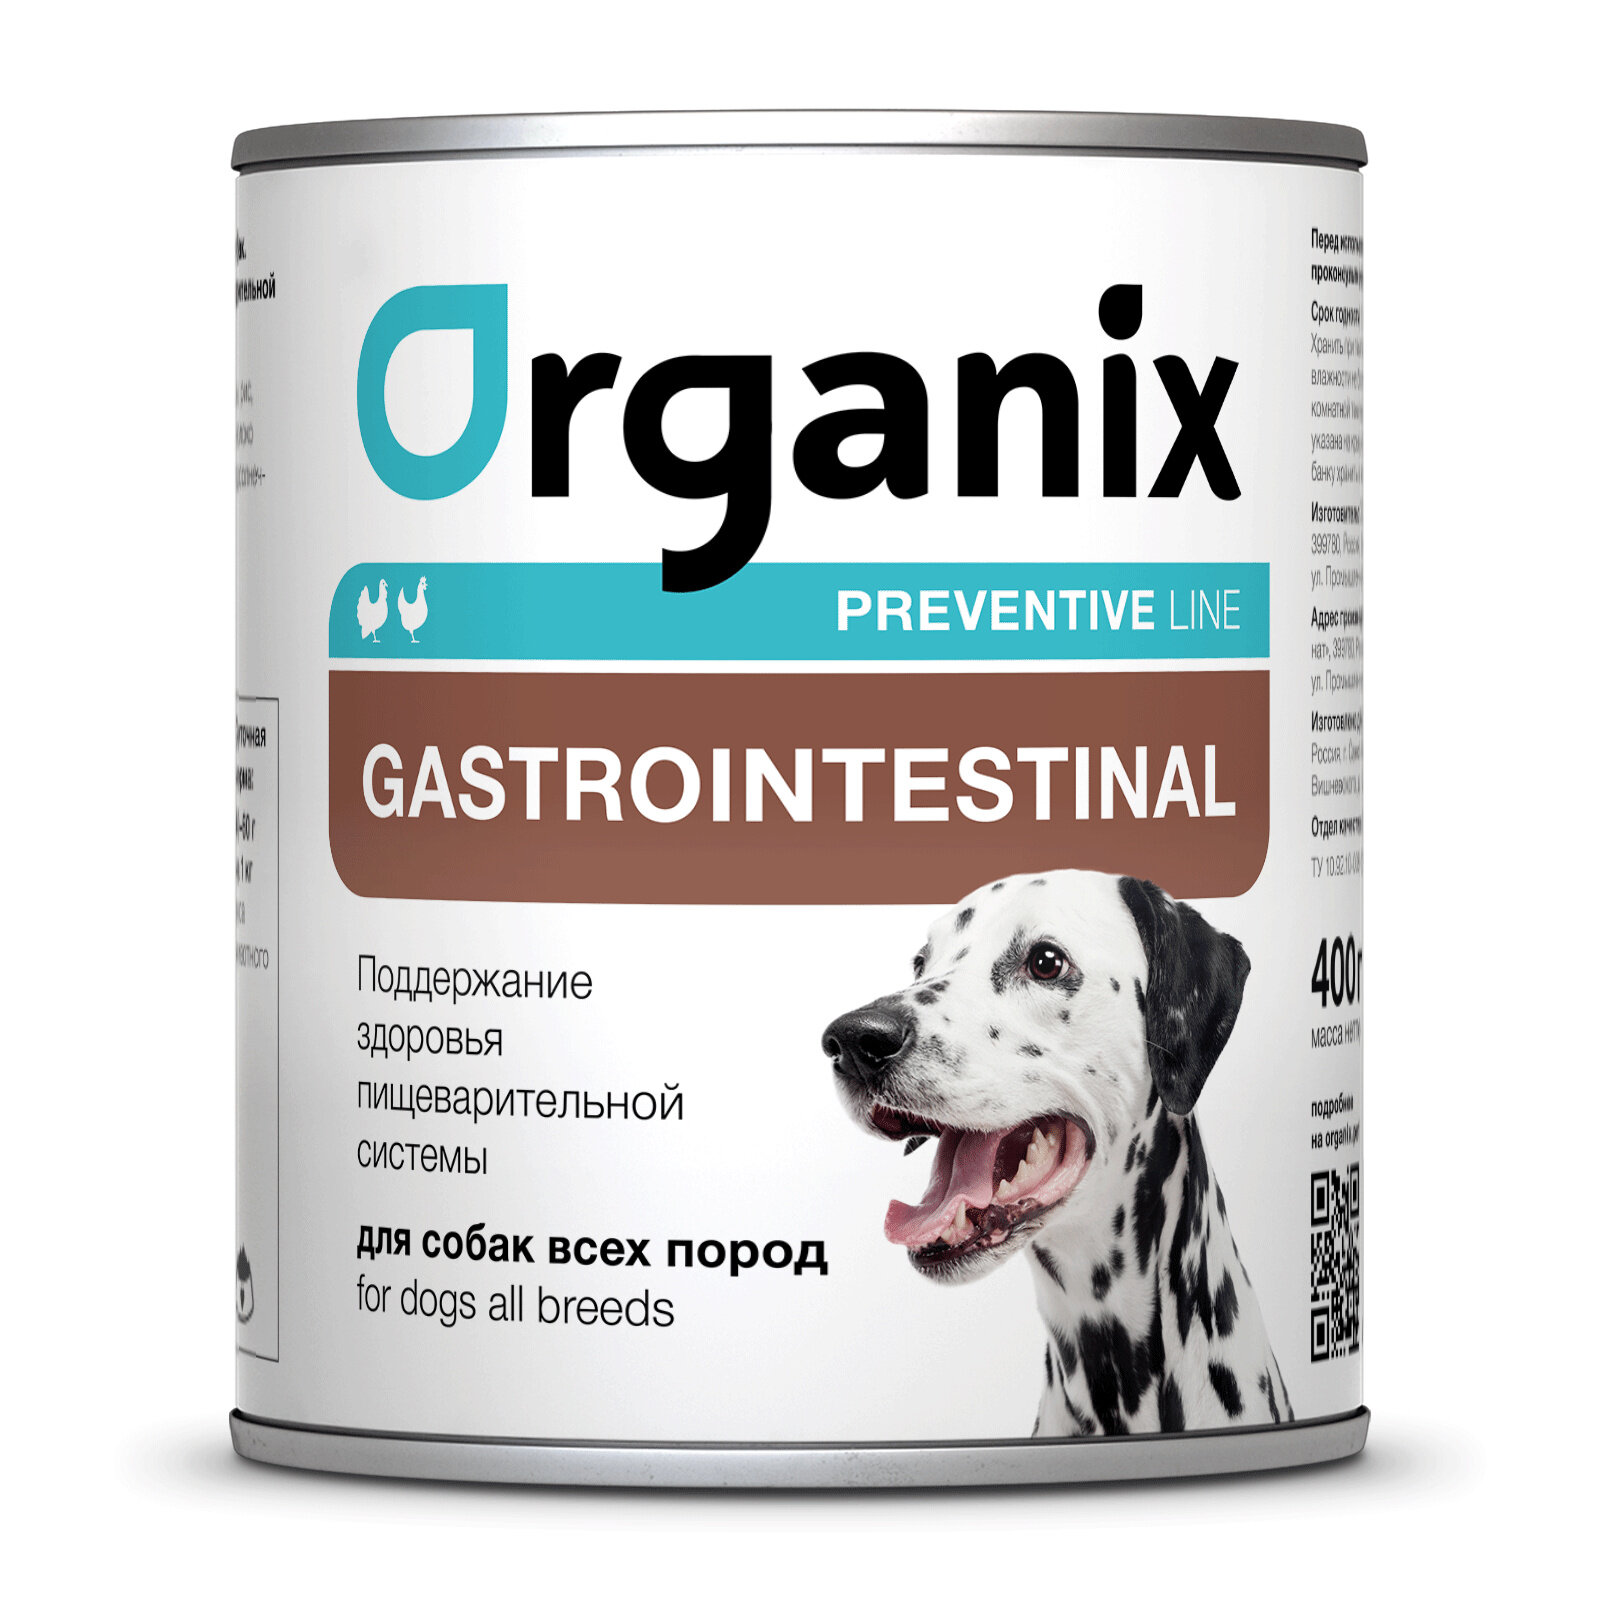 Organix - Консервы для собак поддержание здоровья пищеварительной системы (gastrointestinal) упаковка 12шт x 0.24кг 2.88кг